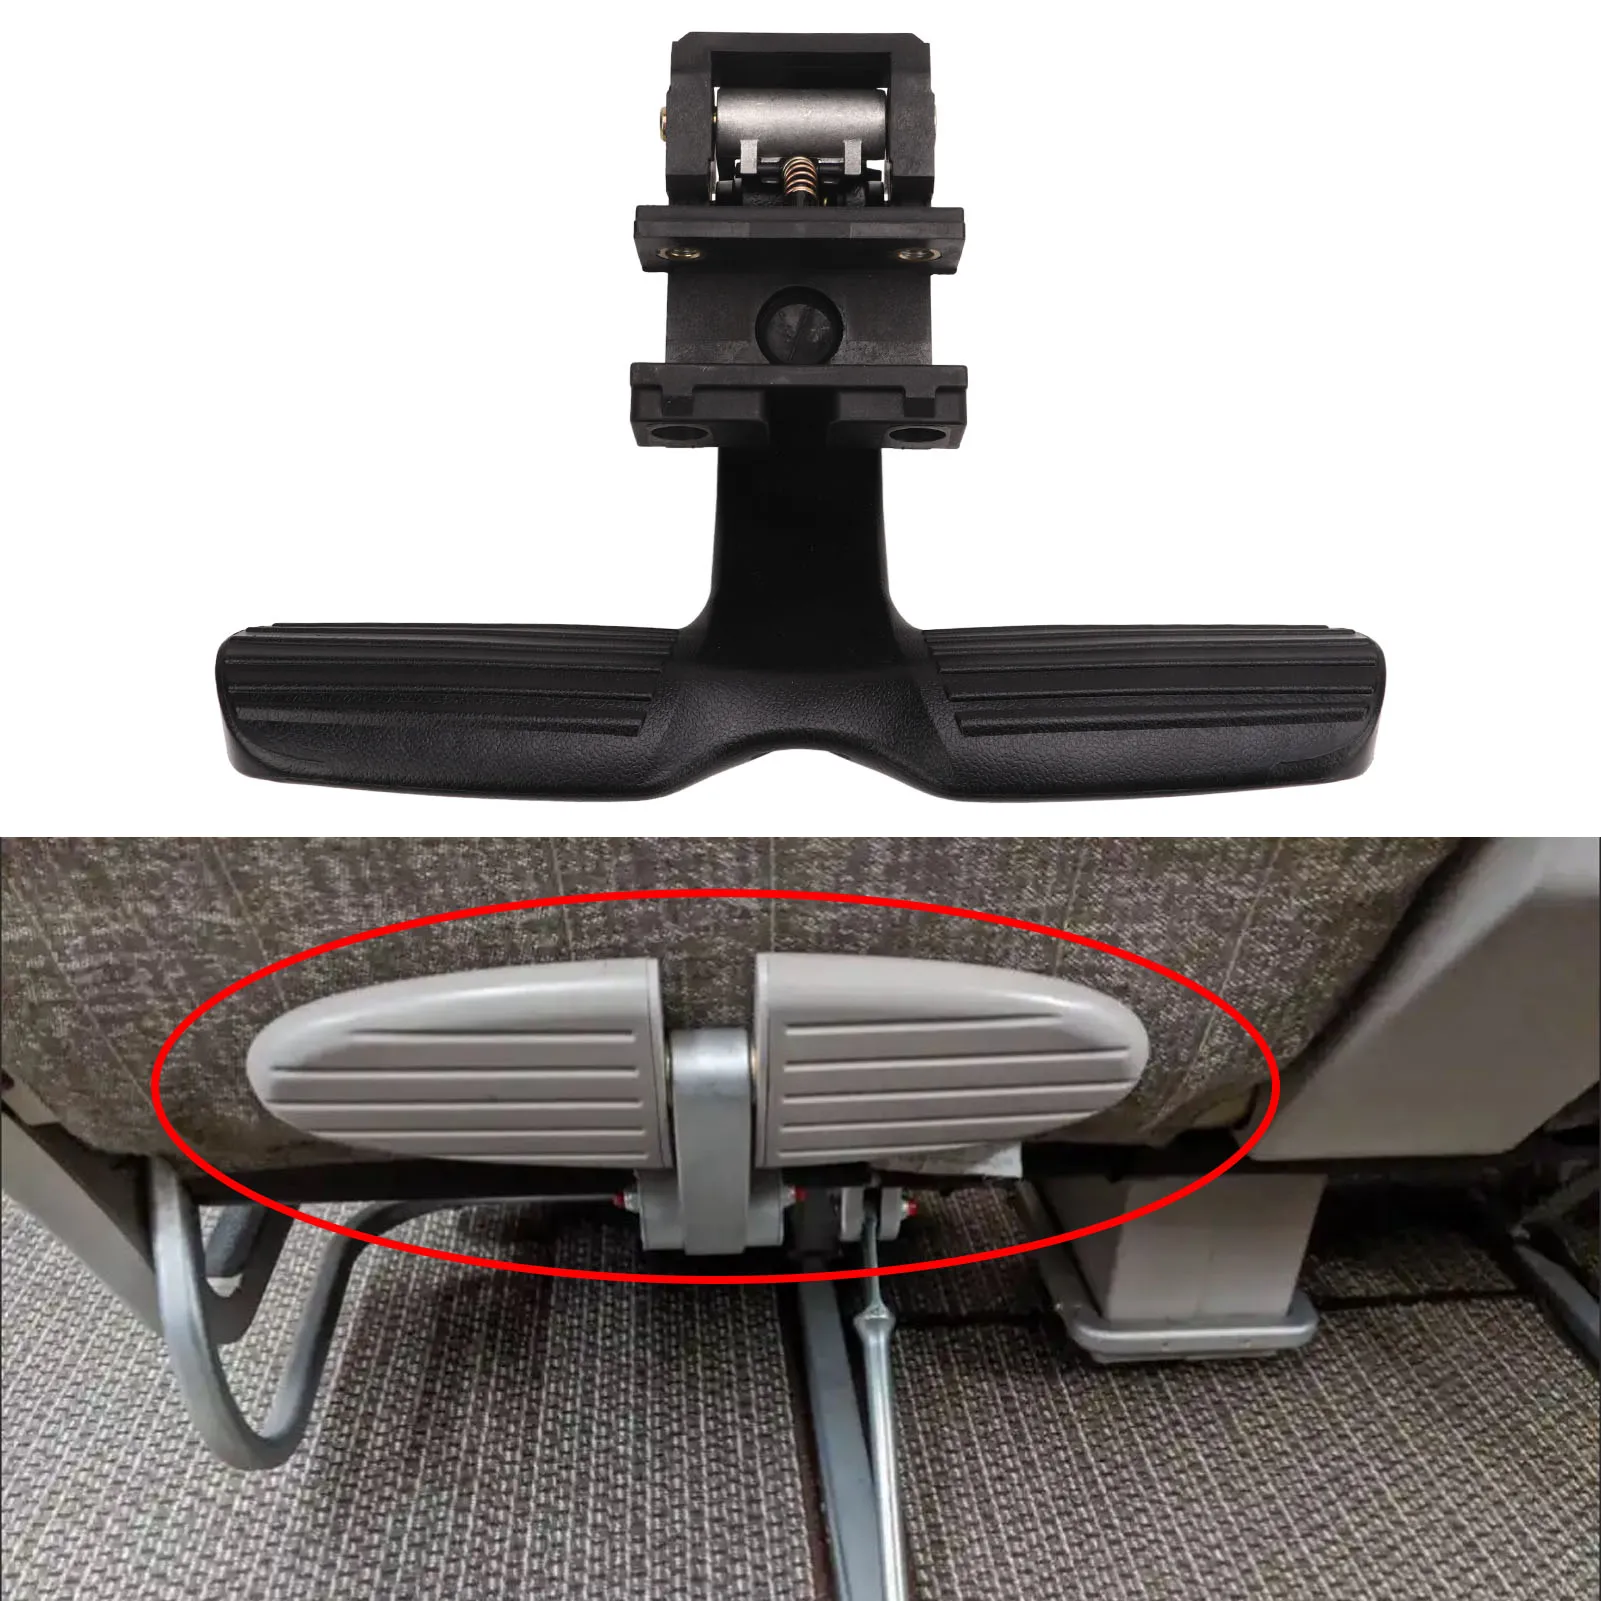 Geri çekilebilir Arka Koltuk Ayak Adım Pedalı Siyah Esnek Koltuk Geri Footrest Pedalı Otomatik Ribaund Otobüs RV Ticari Araç Görüntü 0